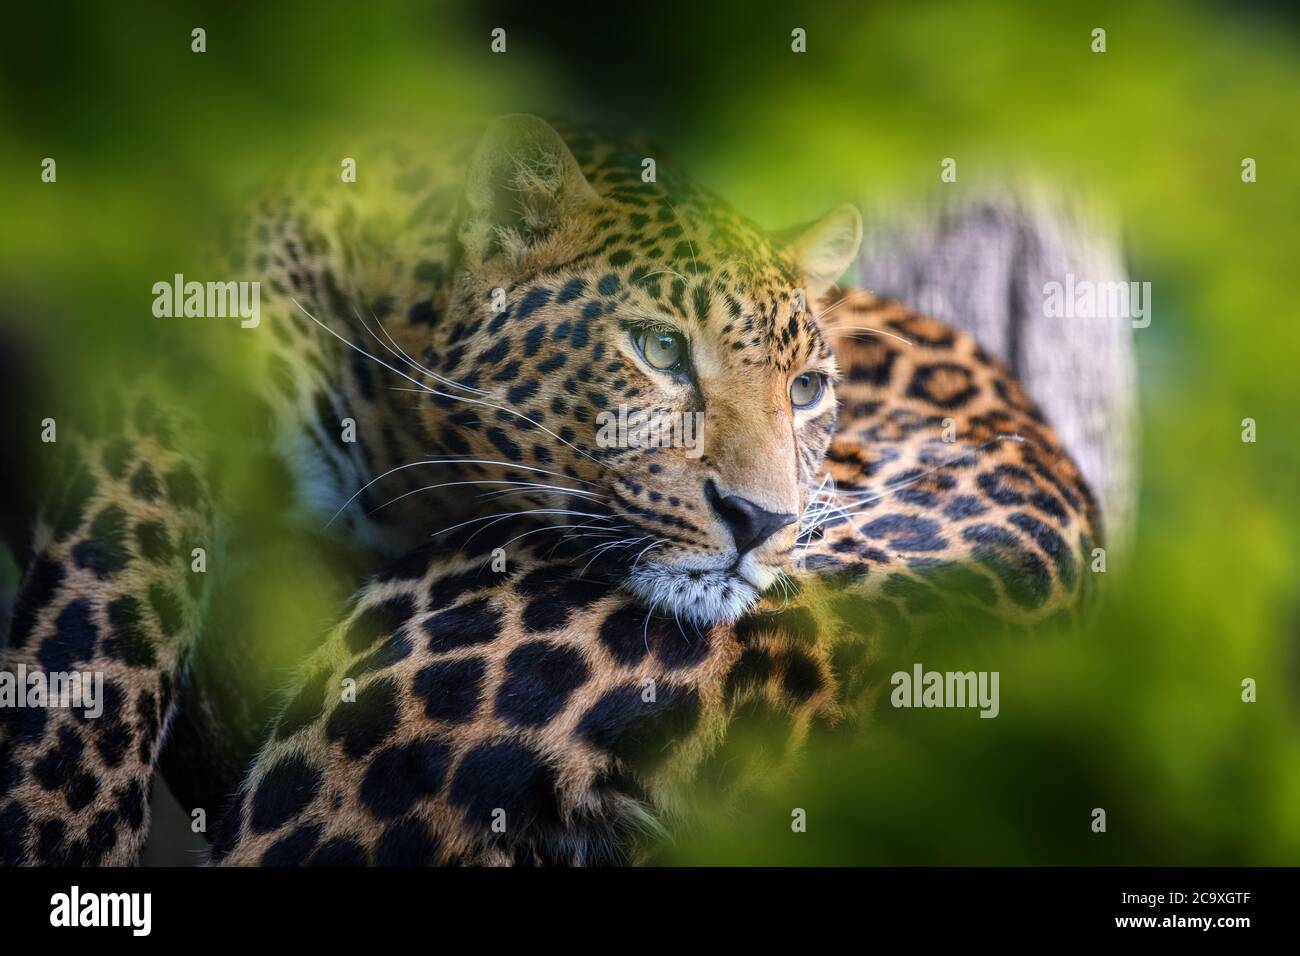 Léopard, animal sauvage dans l'habitat naturel. Grand chat caché dans la forêt Banque D'Images